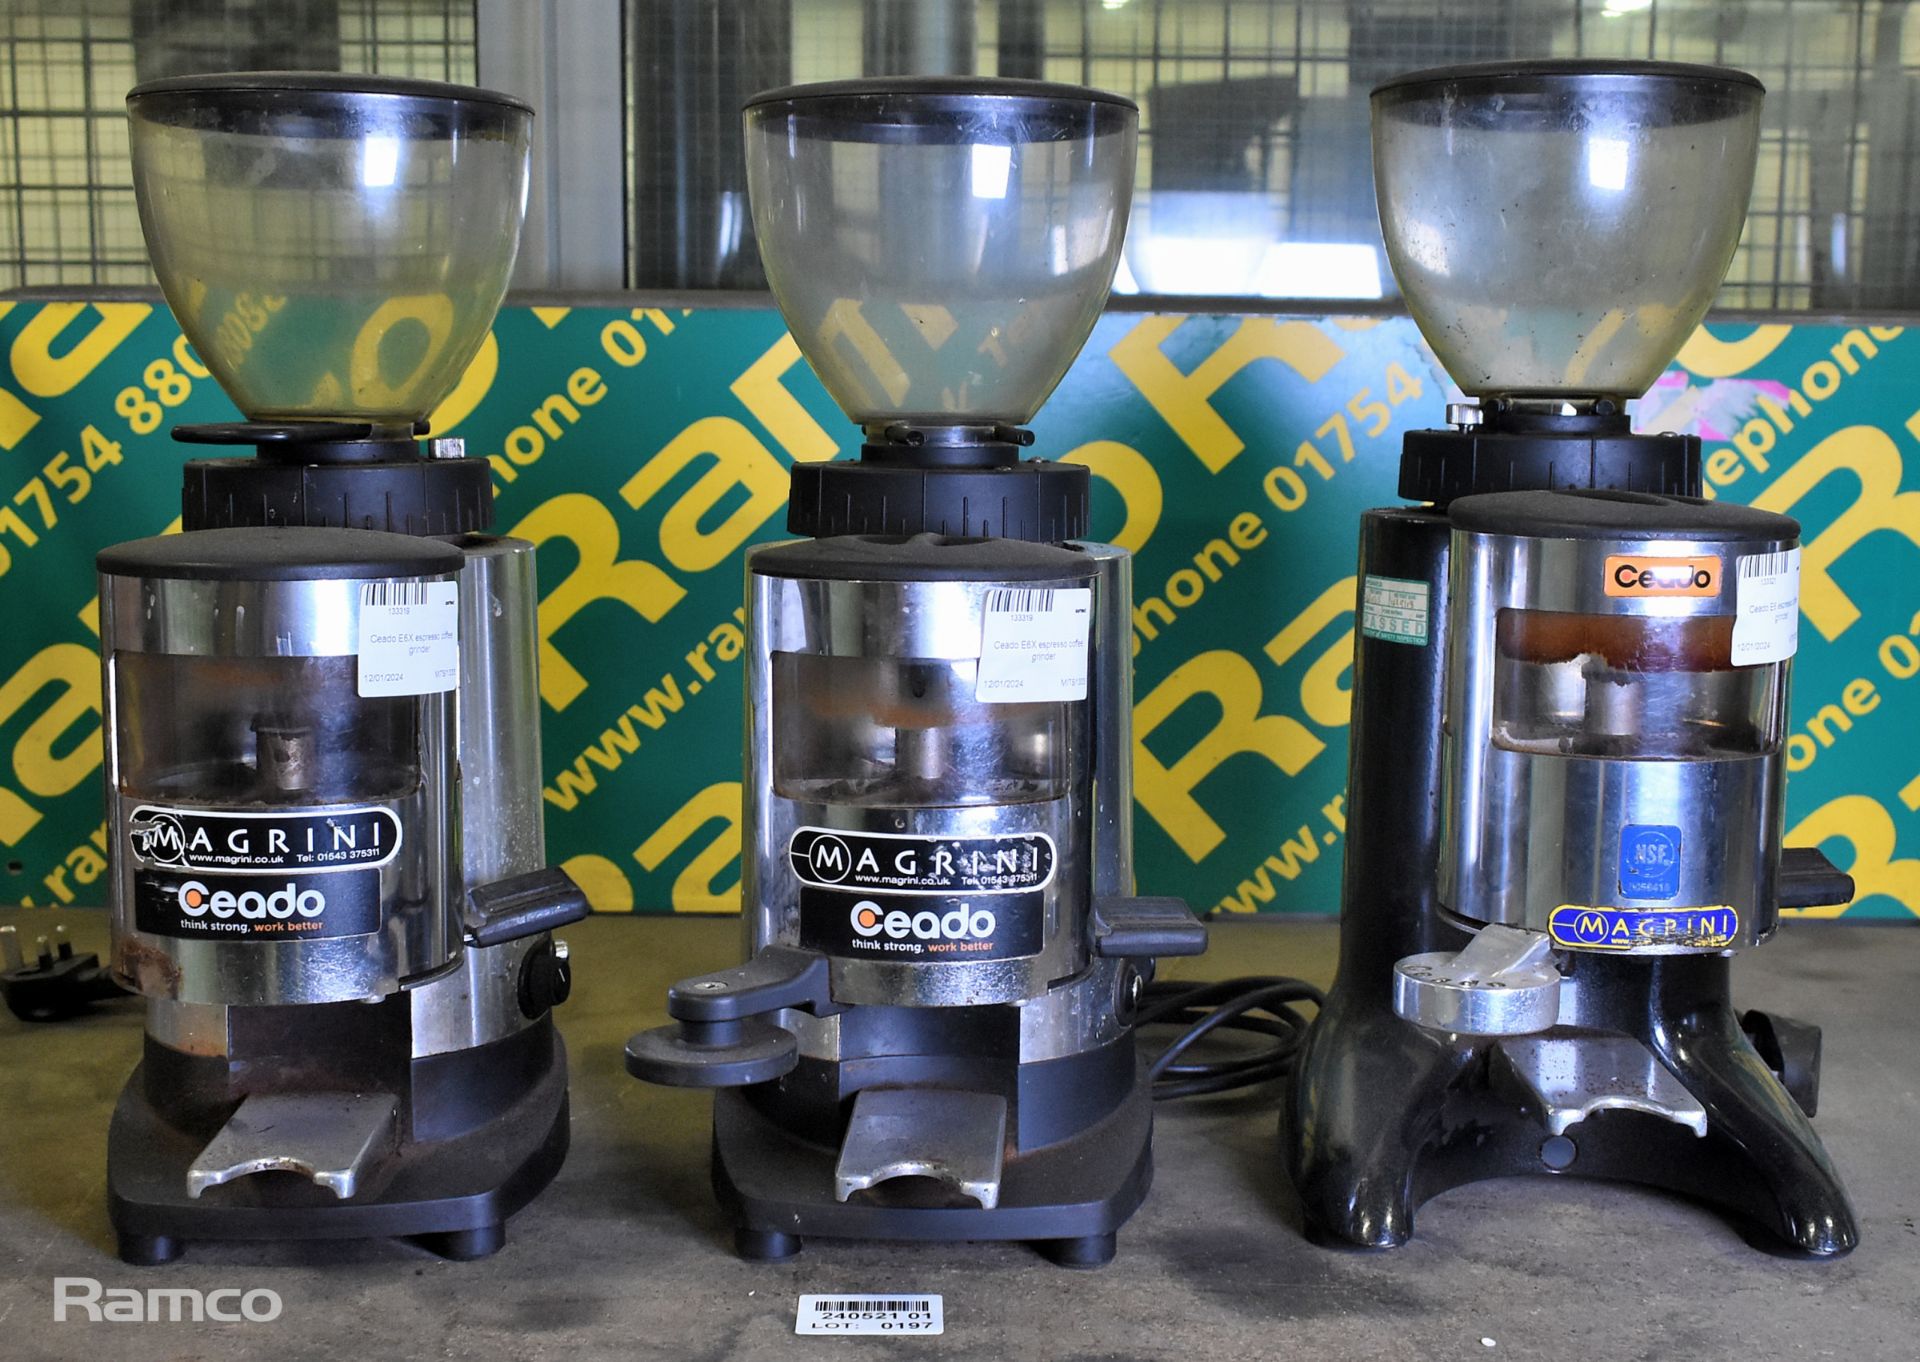 2x Ceado E6X espresso coffee grinders & Ceado E6 espresso coffee grinder